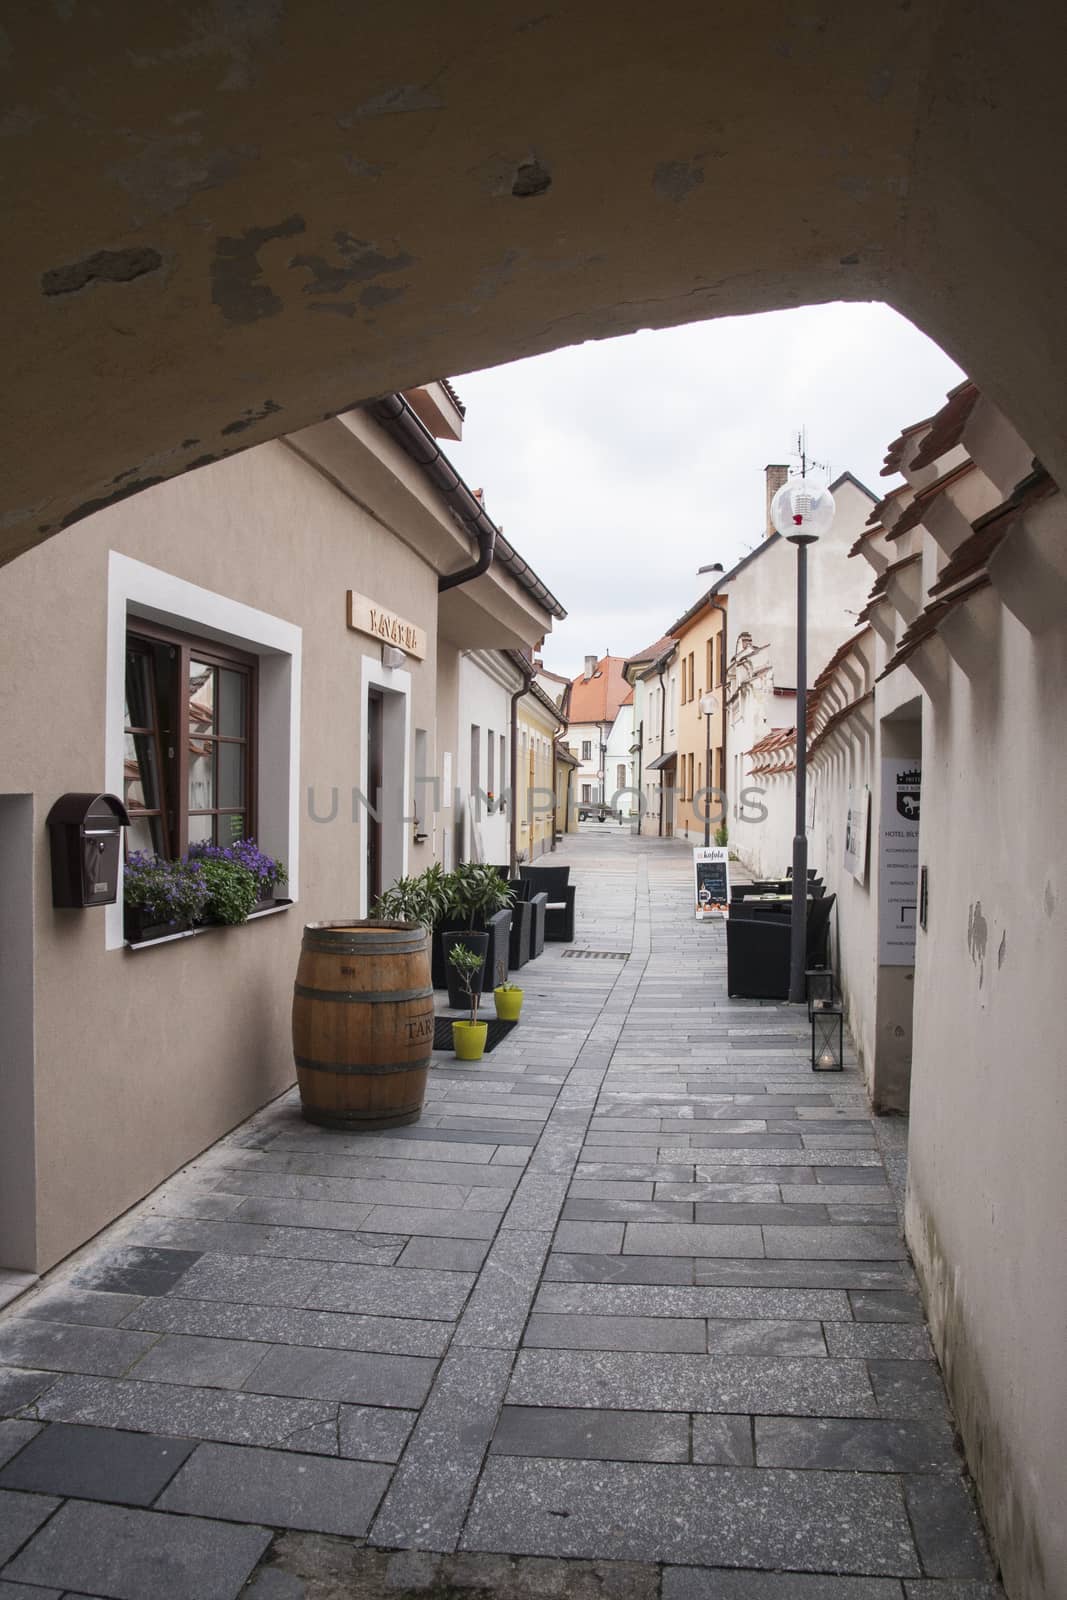 Street in Trebon, Czech Republic by A-dam